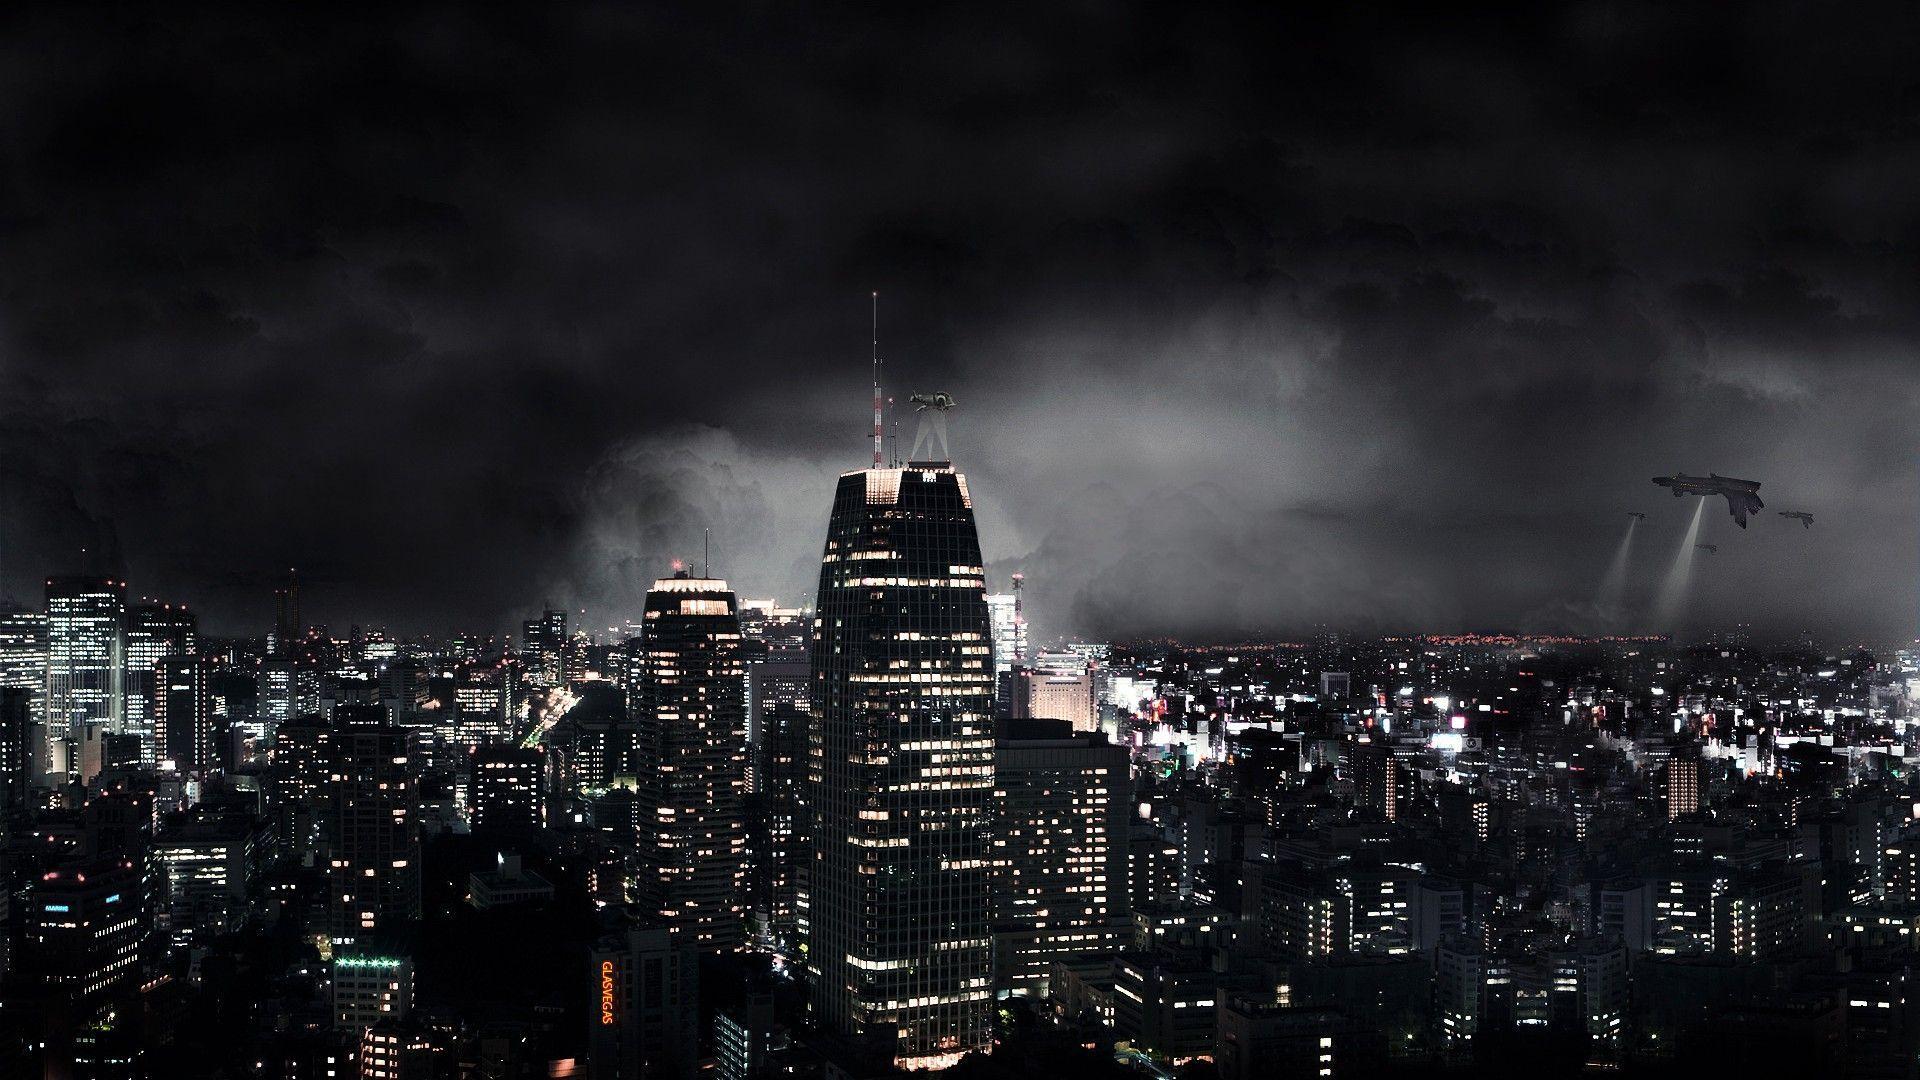 Dark City 4K Wallpapers - Top Free Dark City 4K Backgrounds